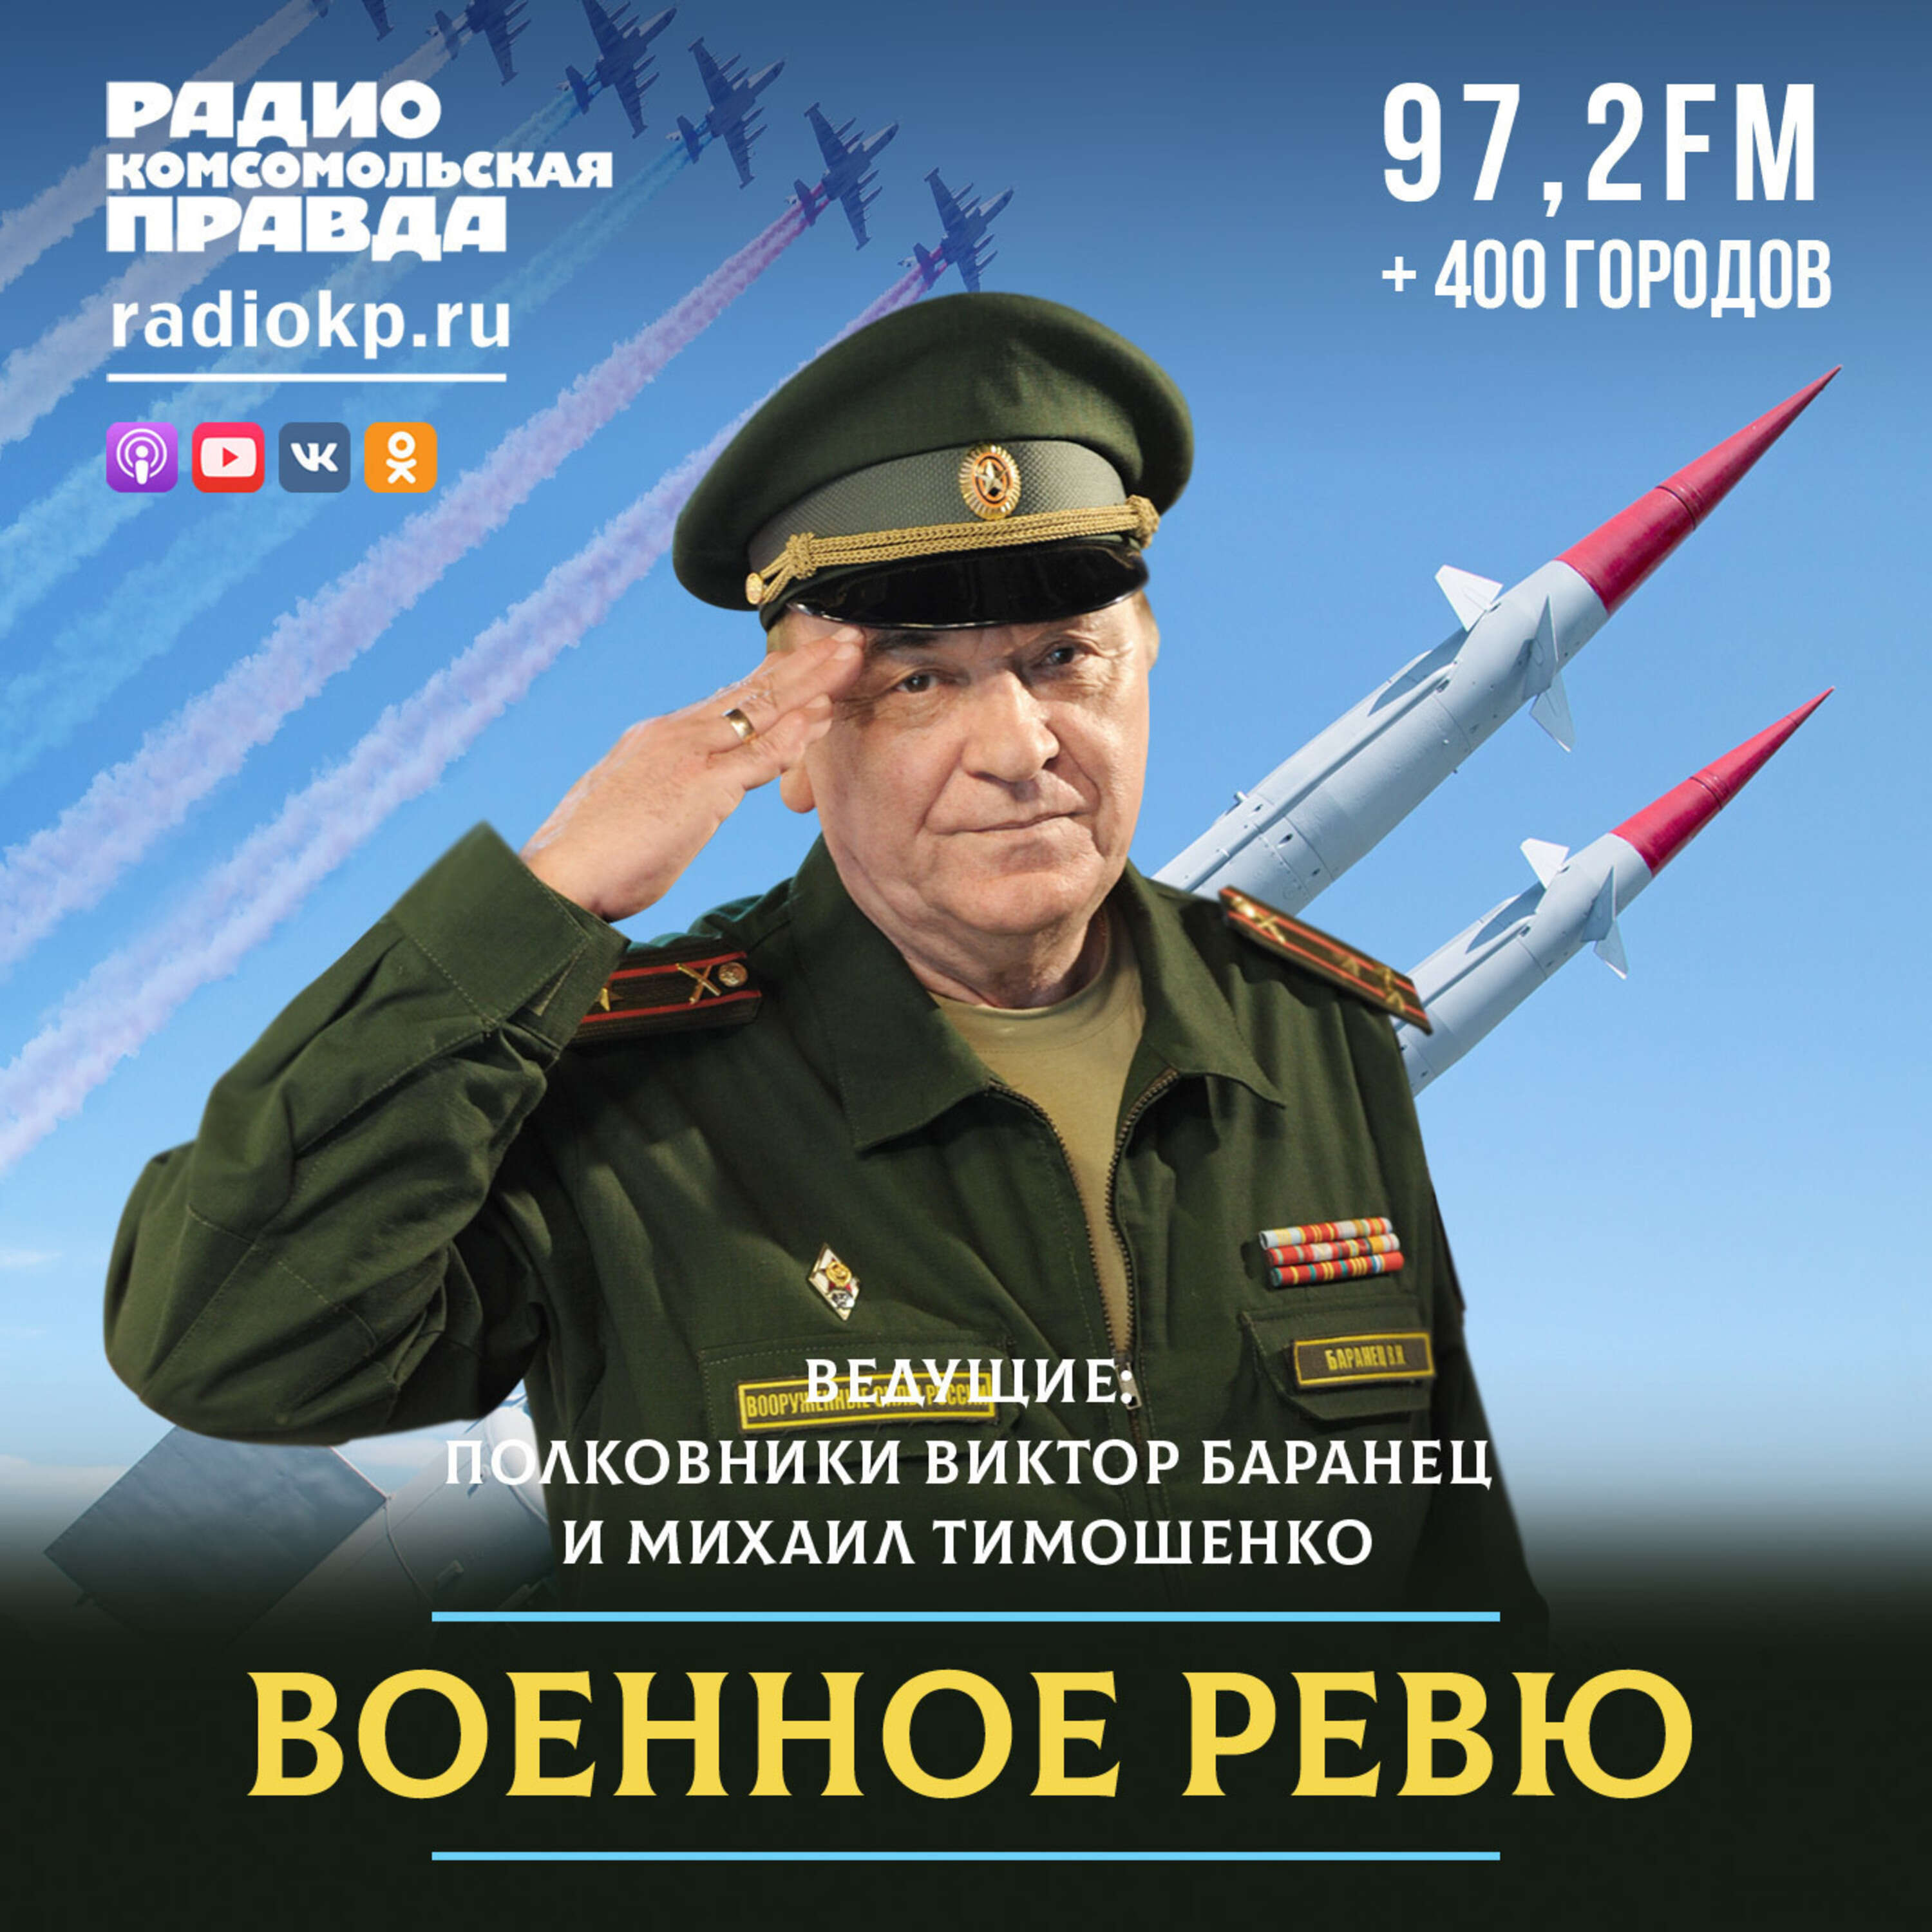 Военное ревю:Радио «Комсомольская правда»